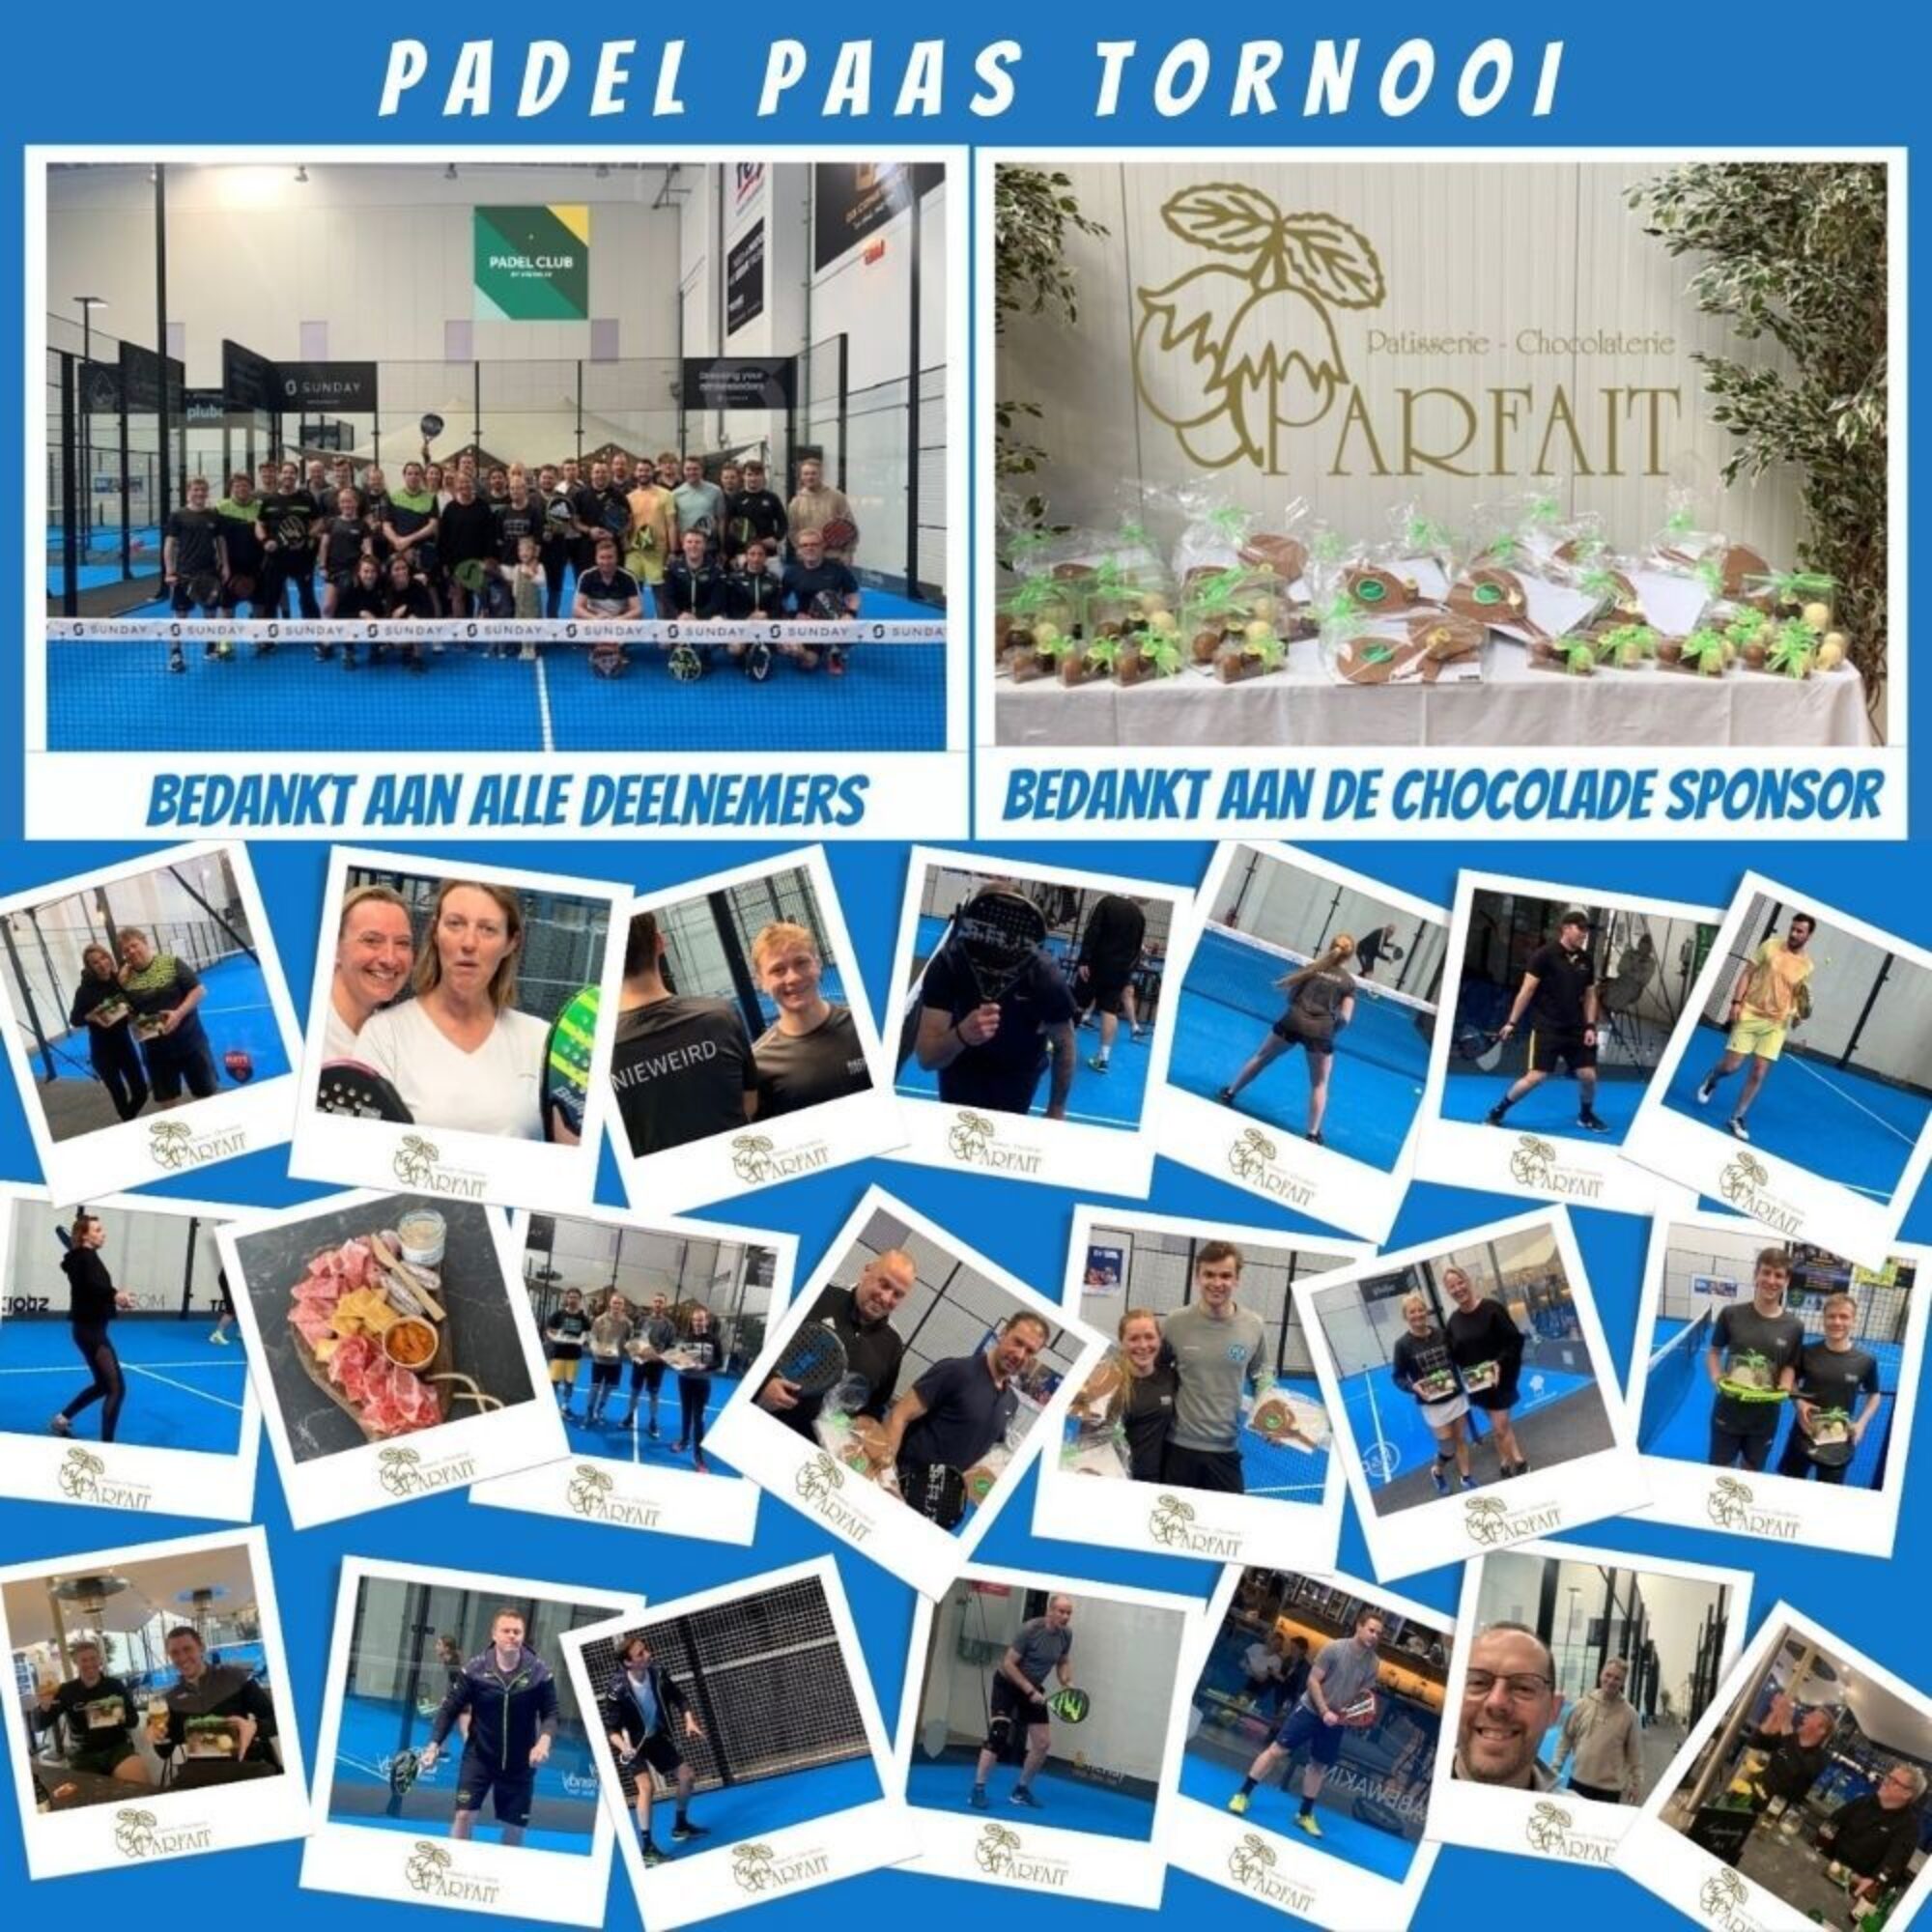 PADEL PAAS TORNOOI website